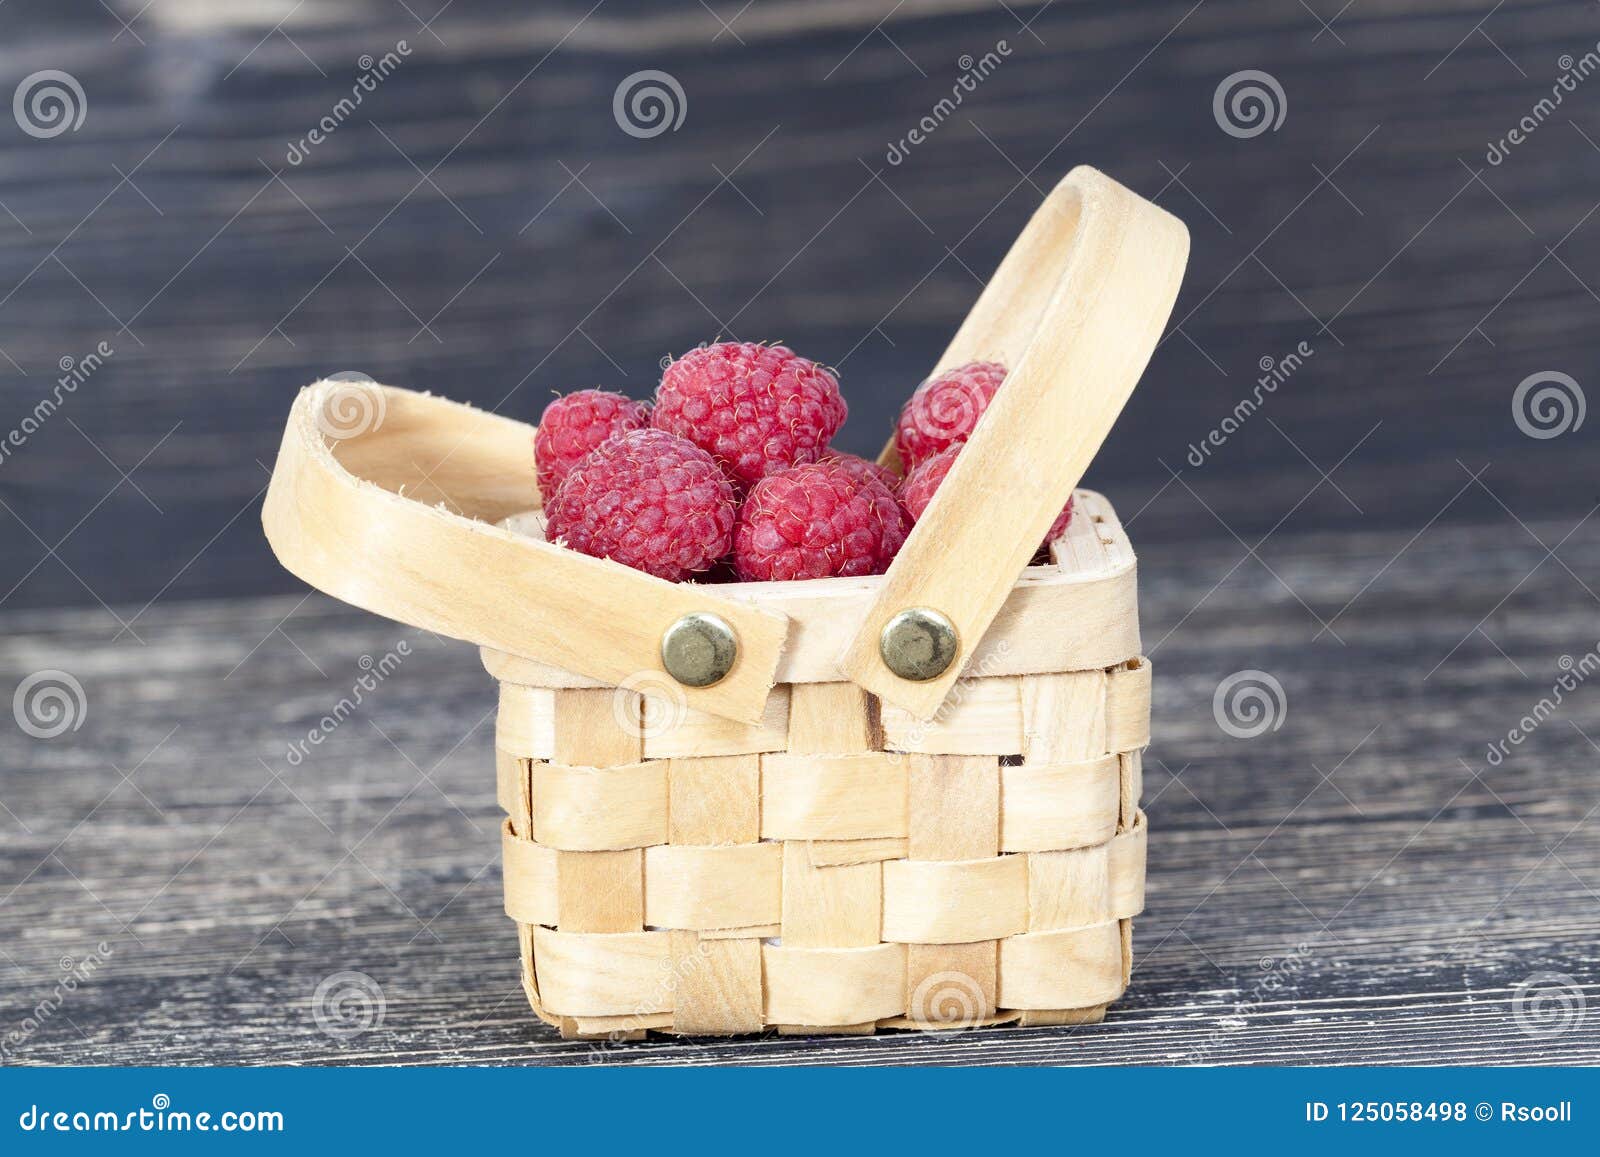 Berries of red raspberries stock photo. Image of organic - 125058498